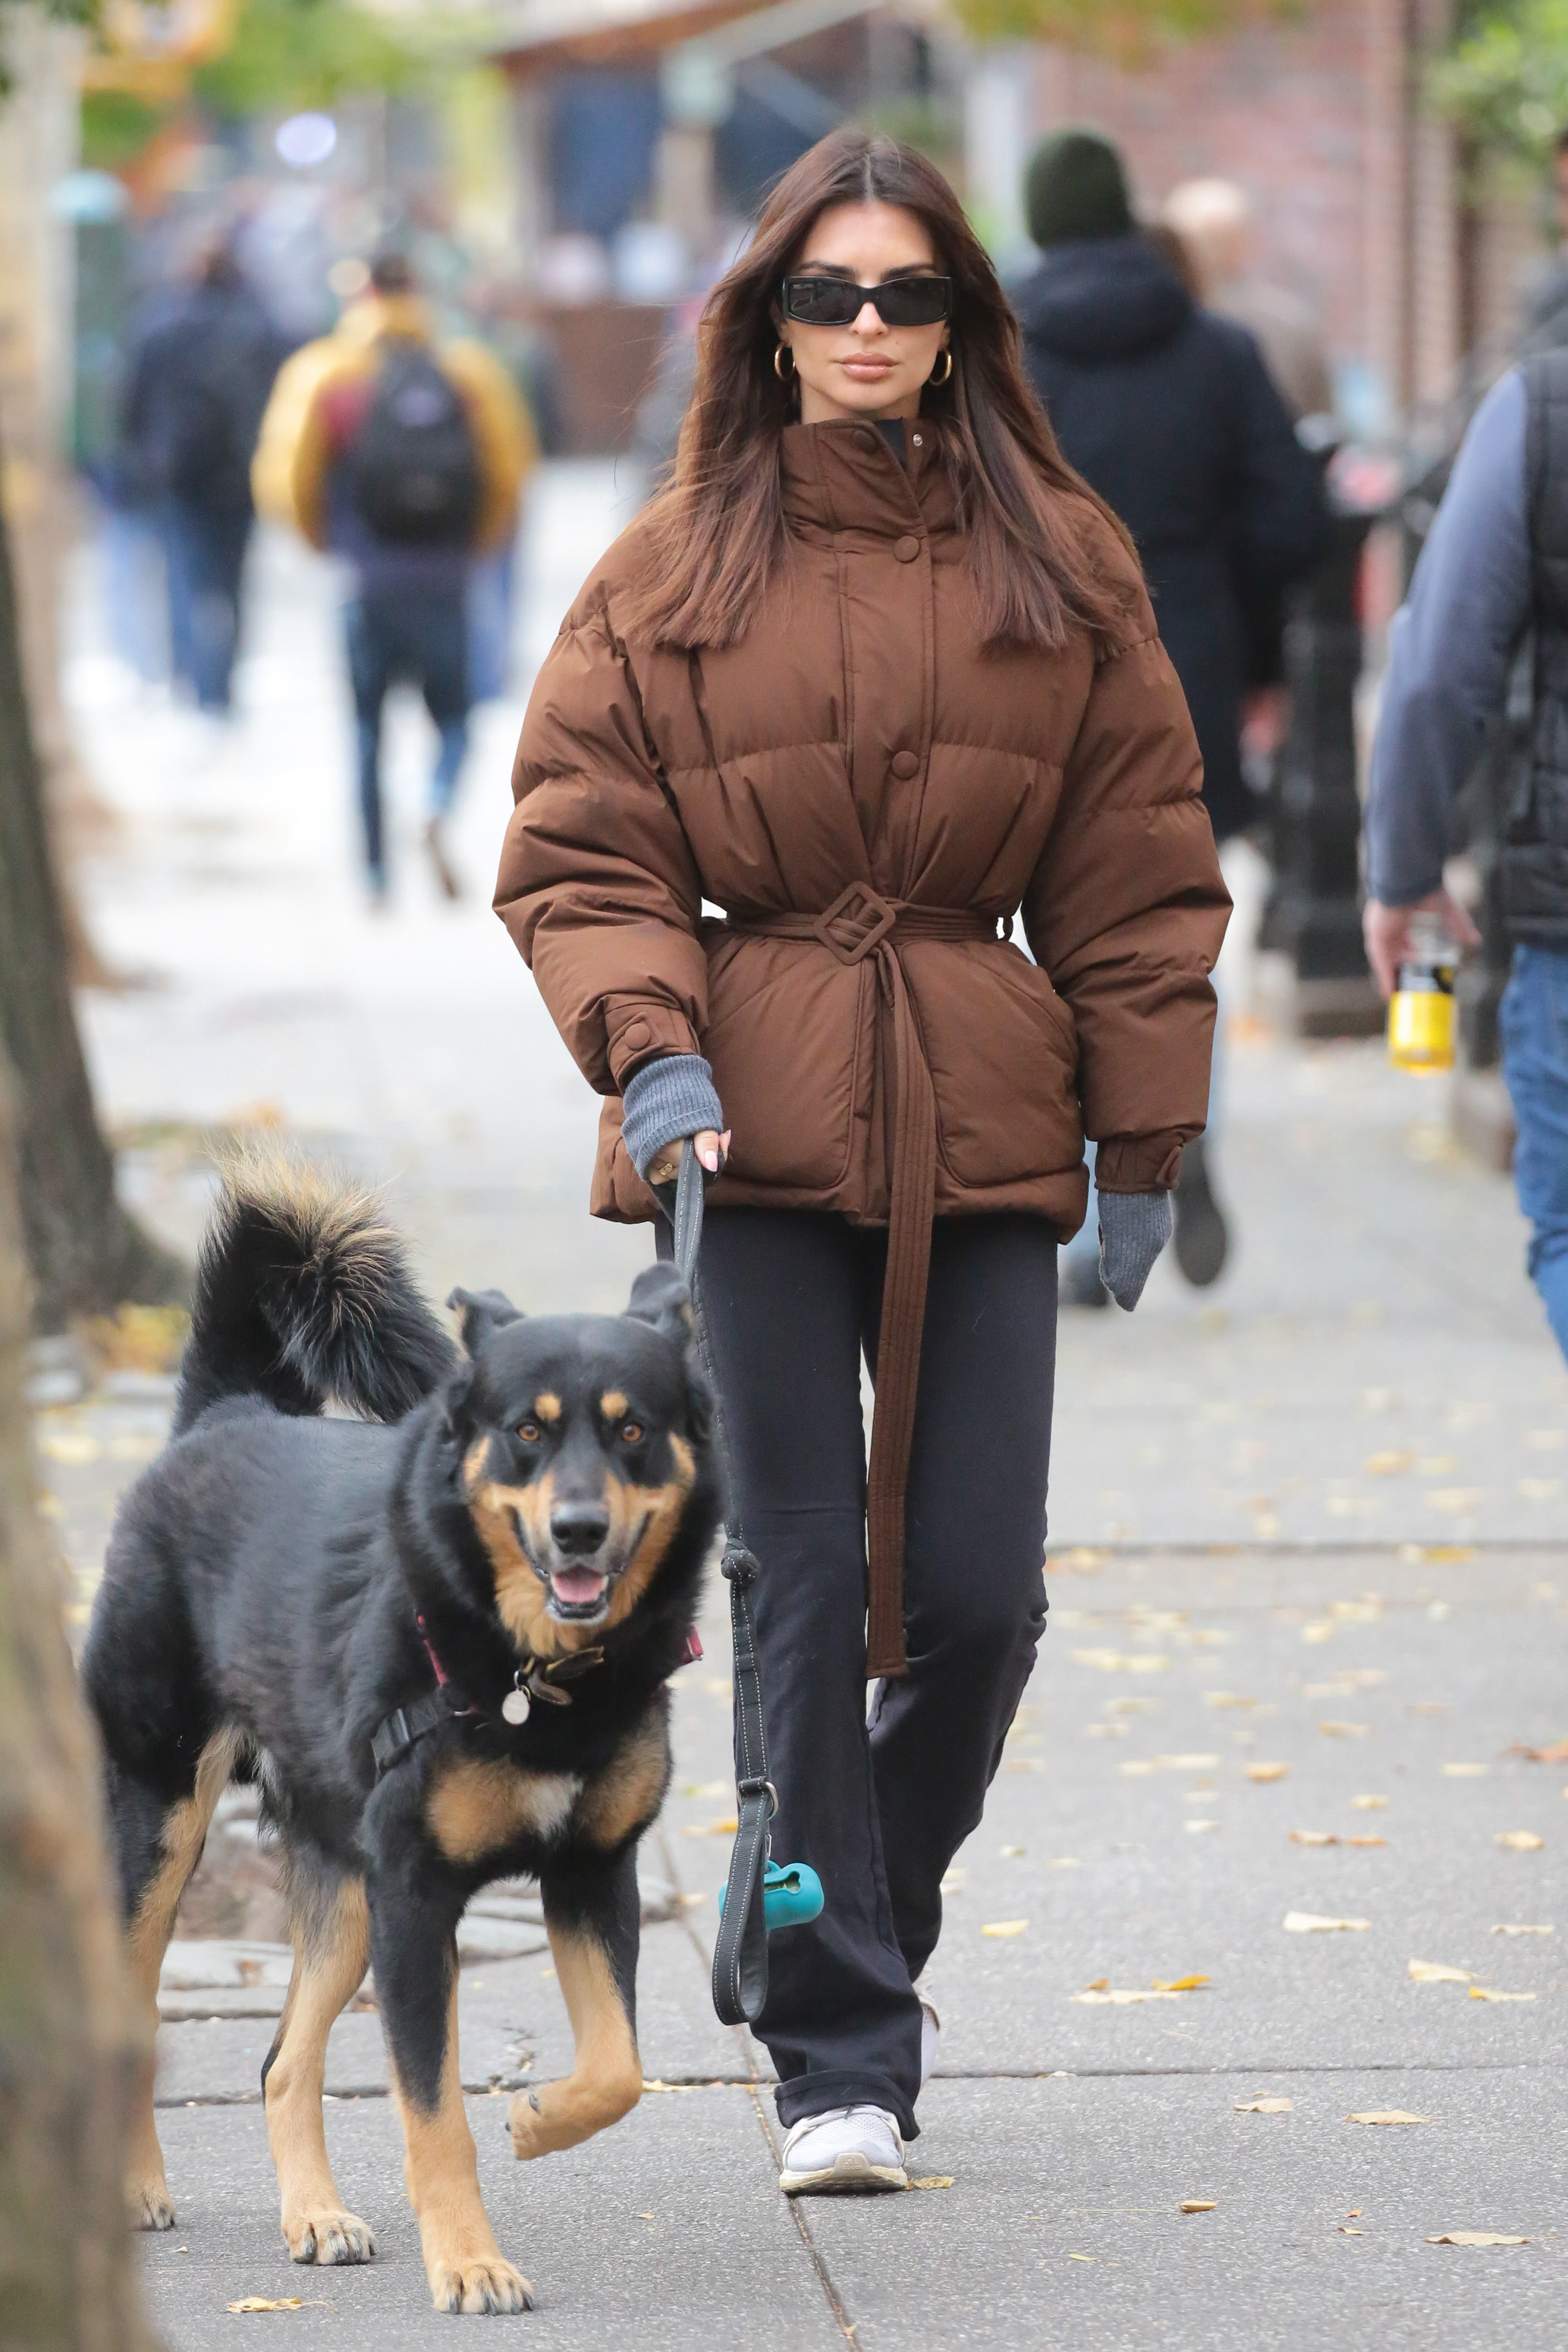 Emily Ratajkowski wurde in einem wattierten Wintermantel mit Jeans und Turnschuhen gesehen, um den ganzen Winter über warm zu bleiben